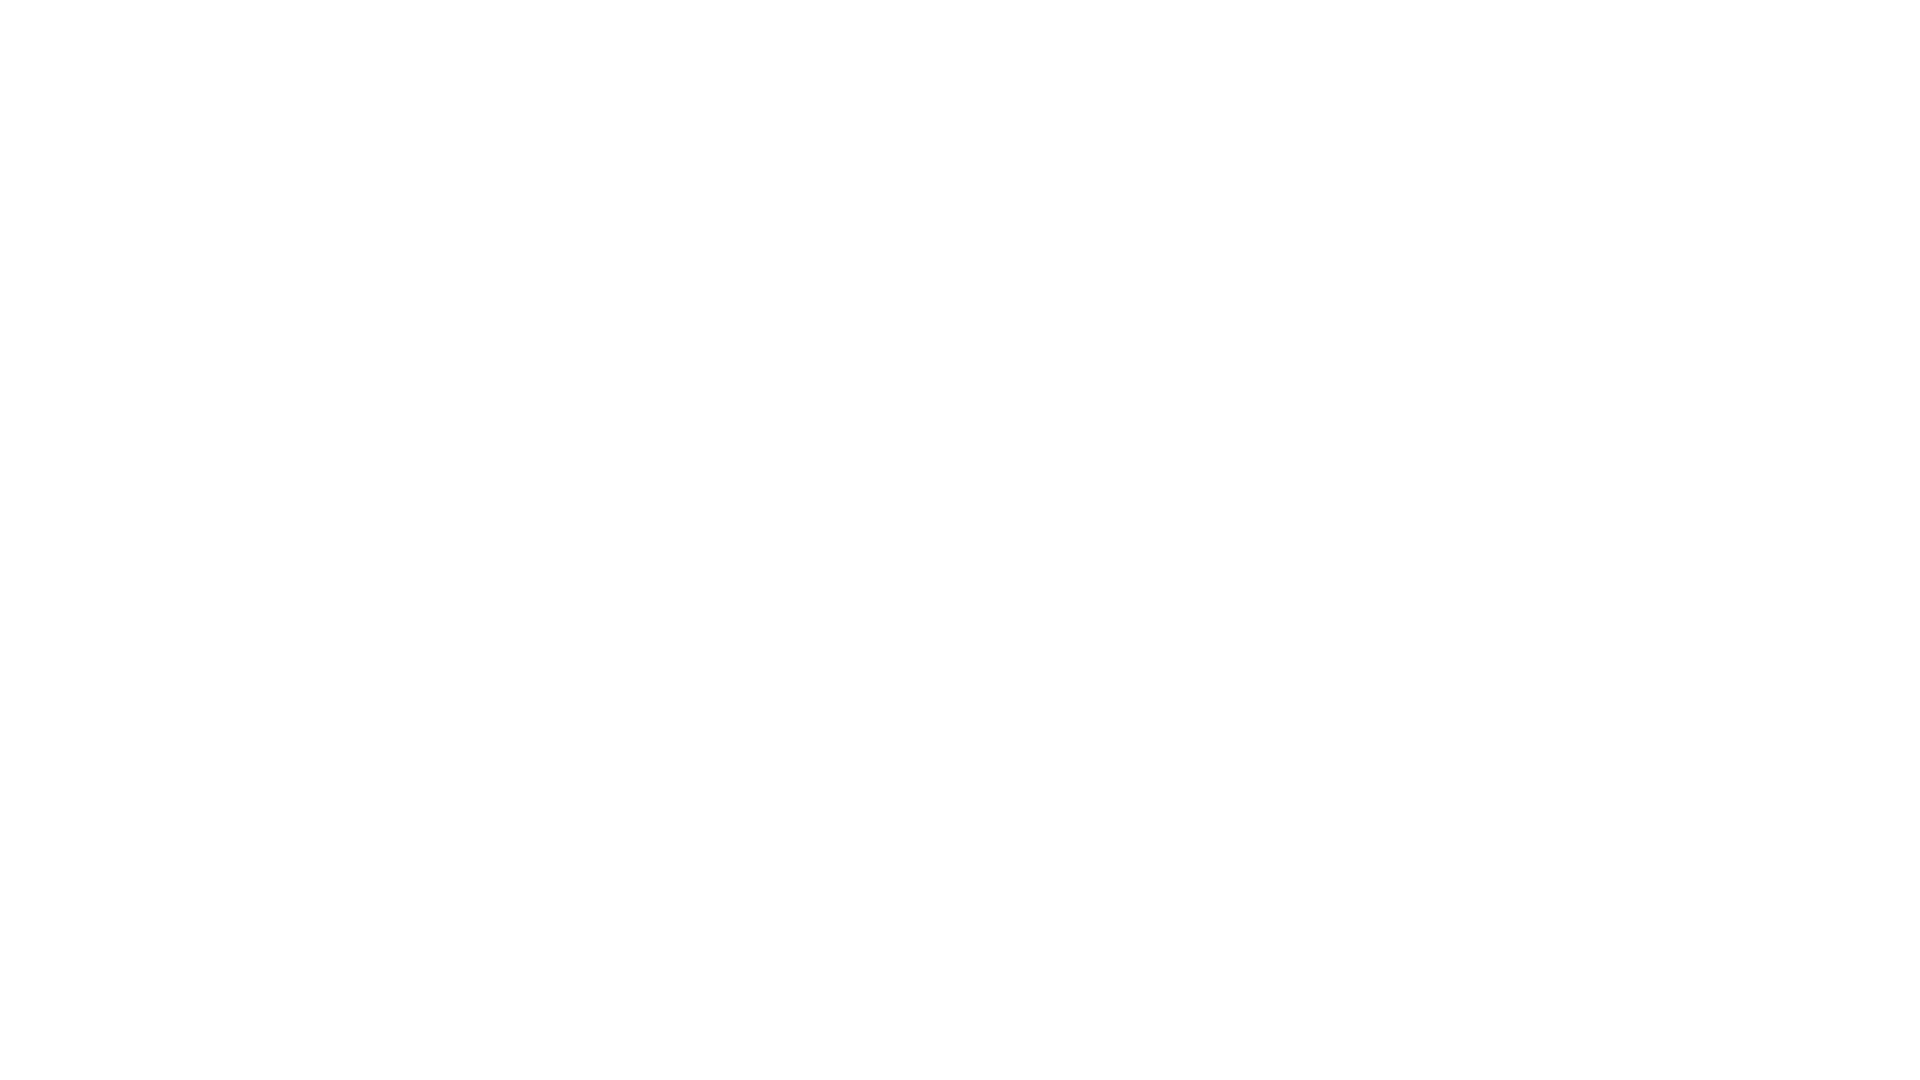 Pierre Froger - Vidéaste & Pilote de Drone | Paris